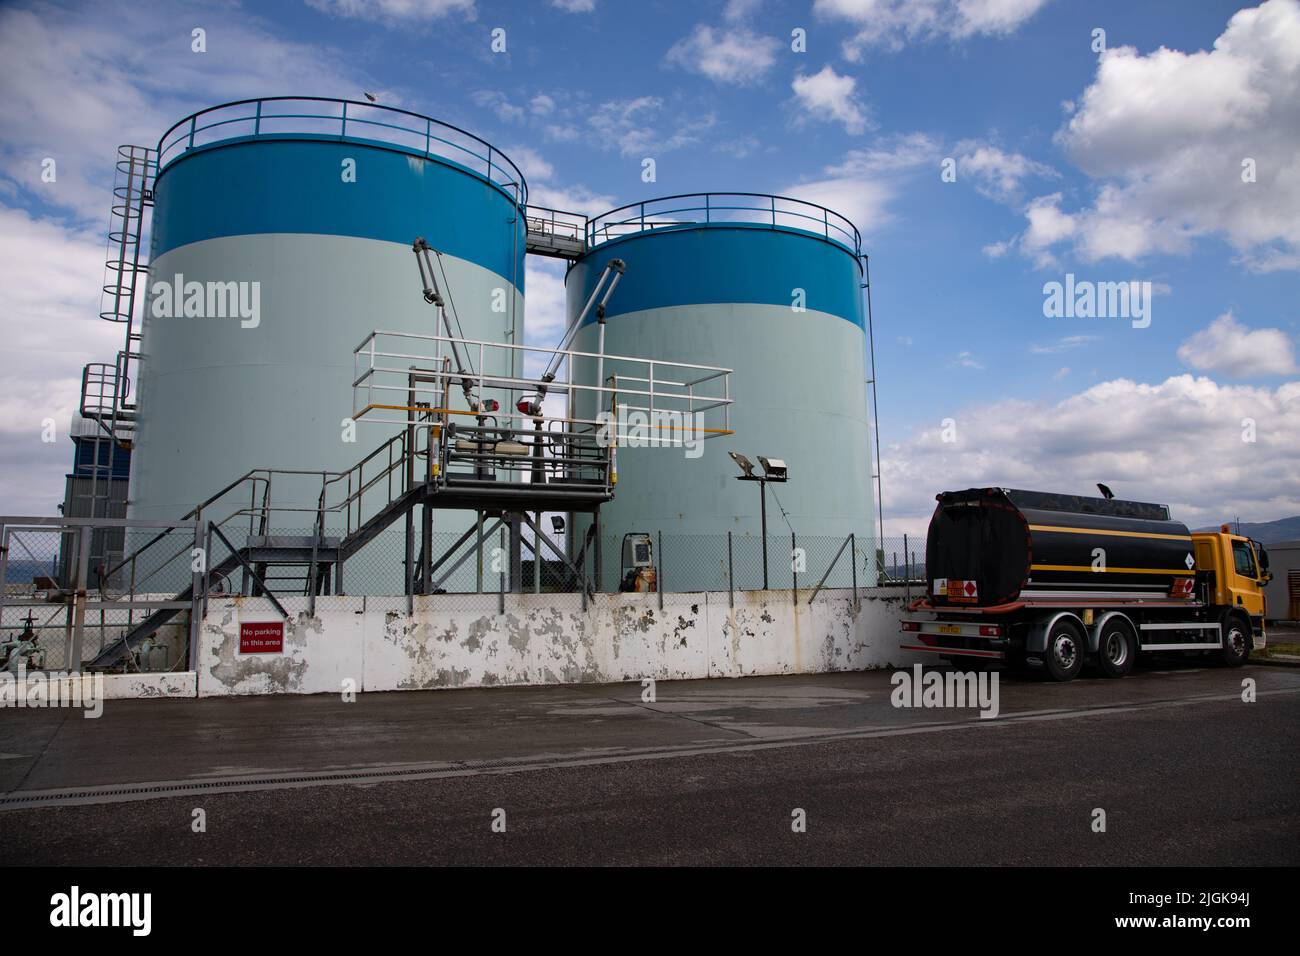 Storage tanks, Mallaig, Scotland Stock Photo